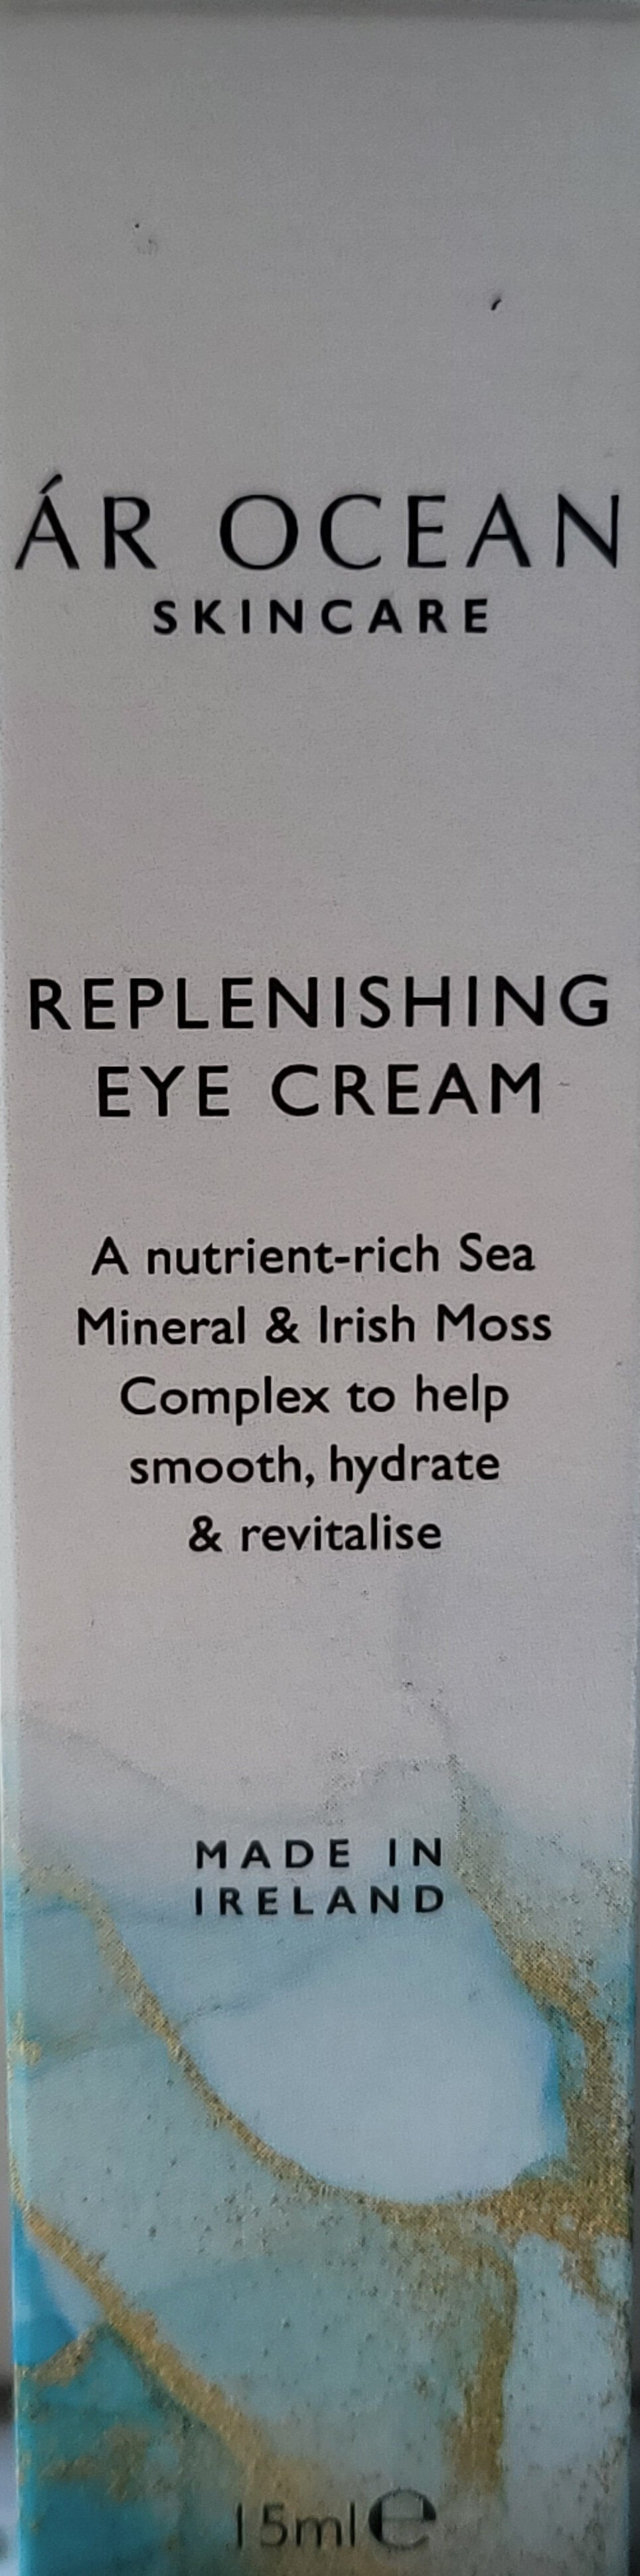 Replenishing Eye Cream - Produit - en